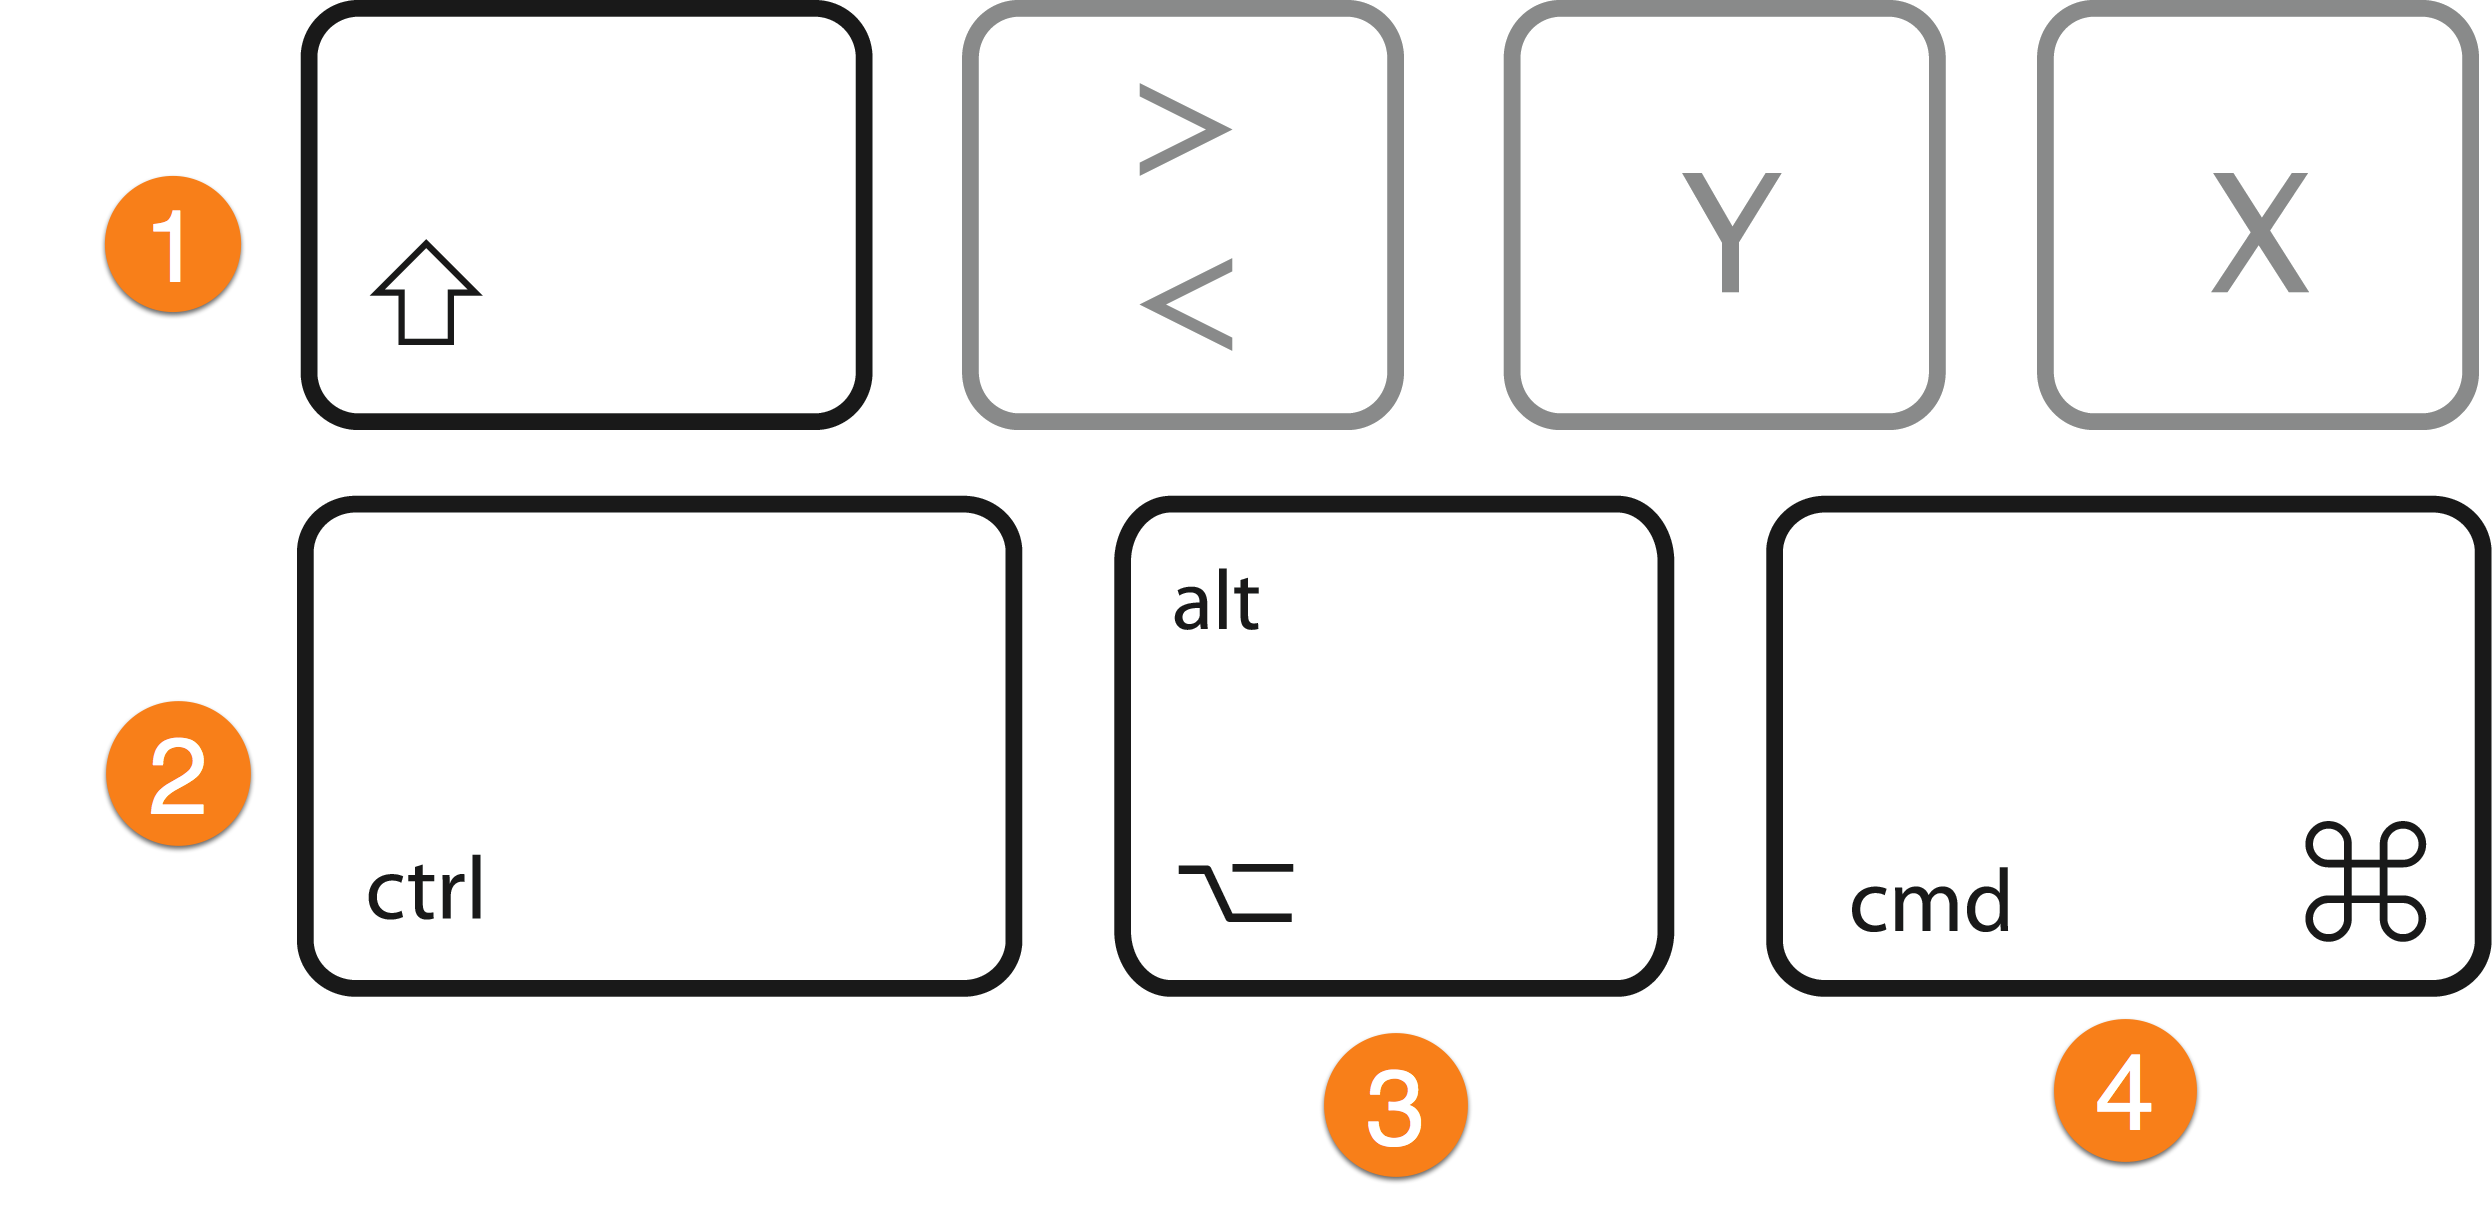 Keyboard:Keys 1